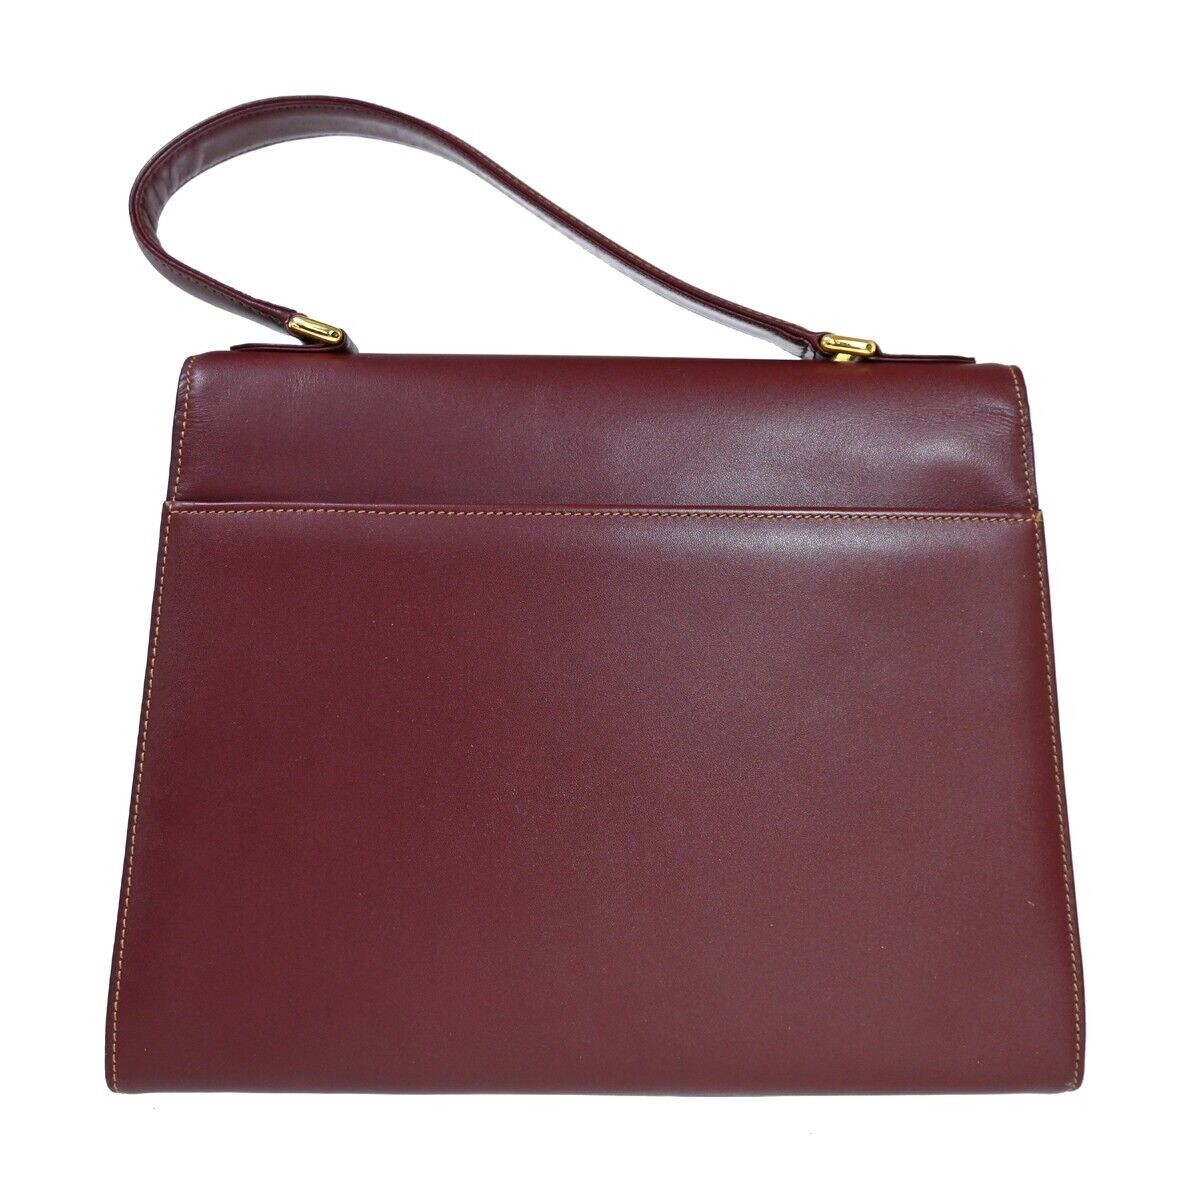 Burgundy Leather Shoulder Bag with Gold Hardware